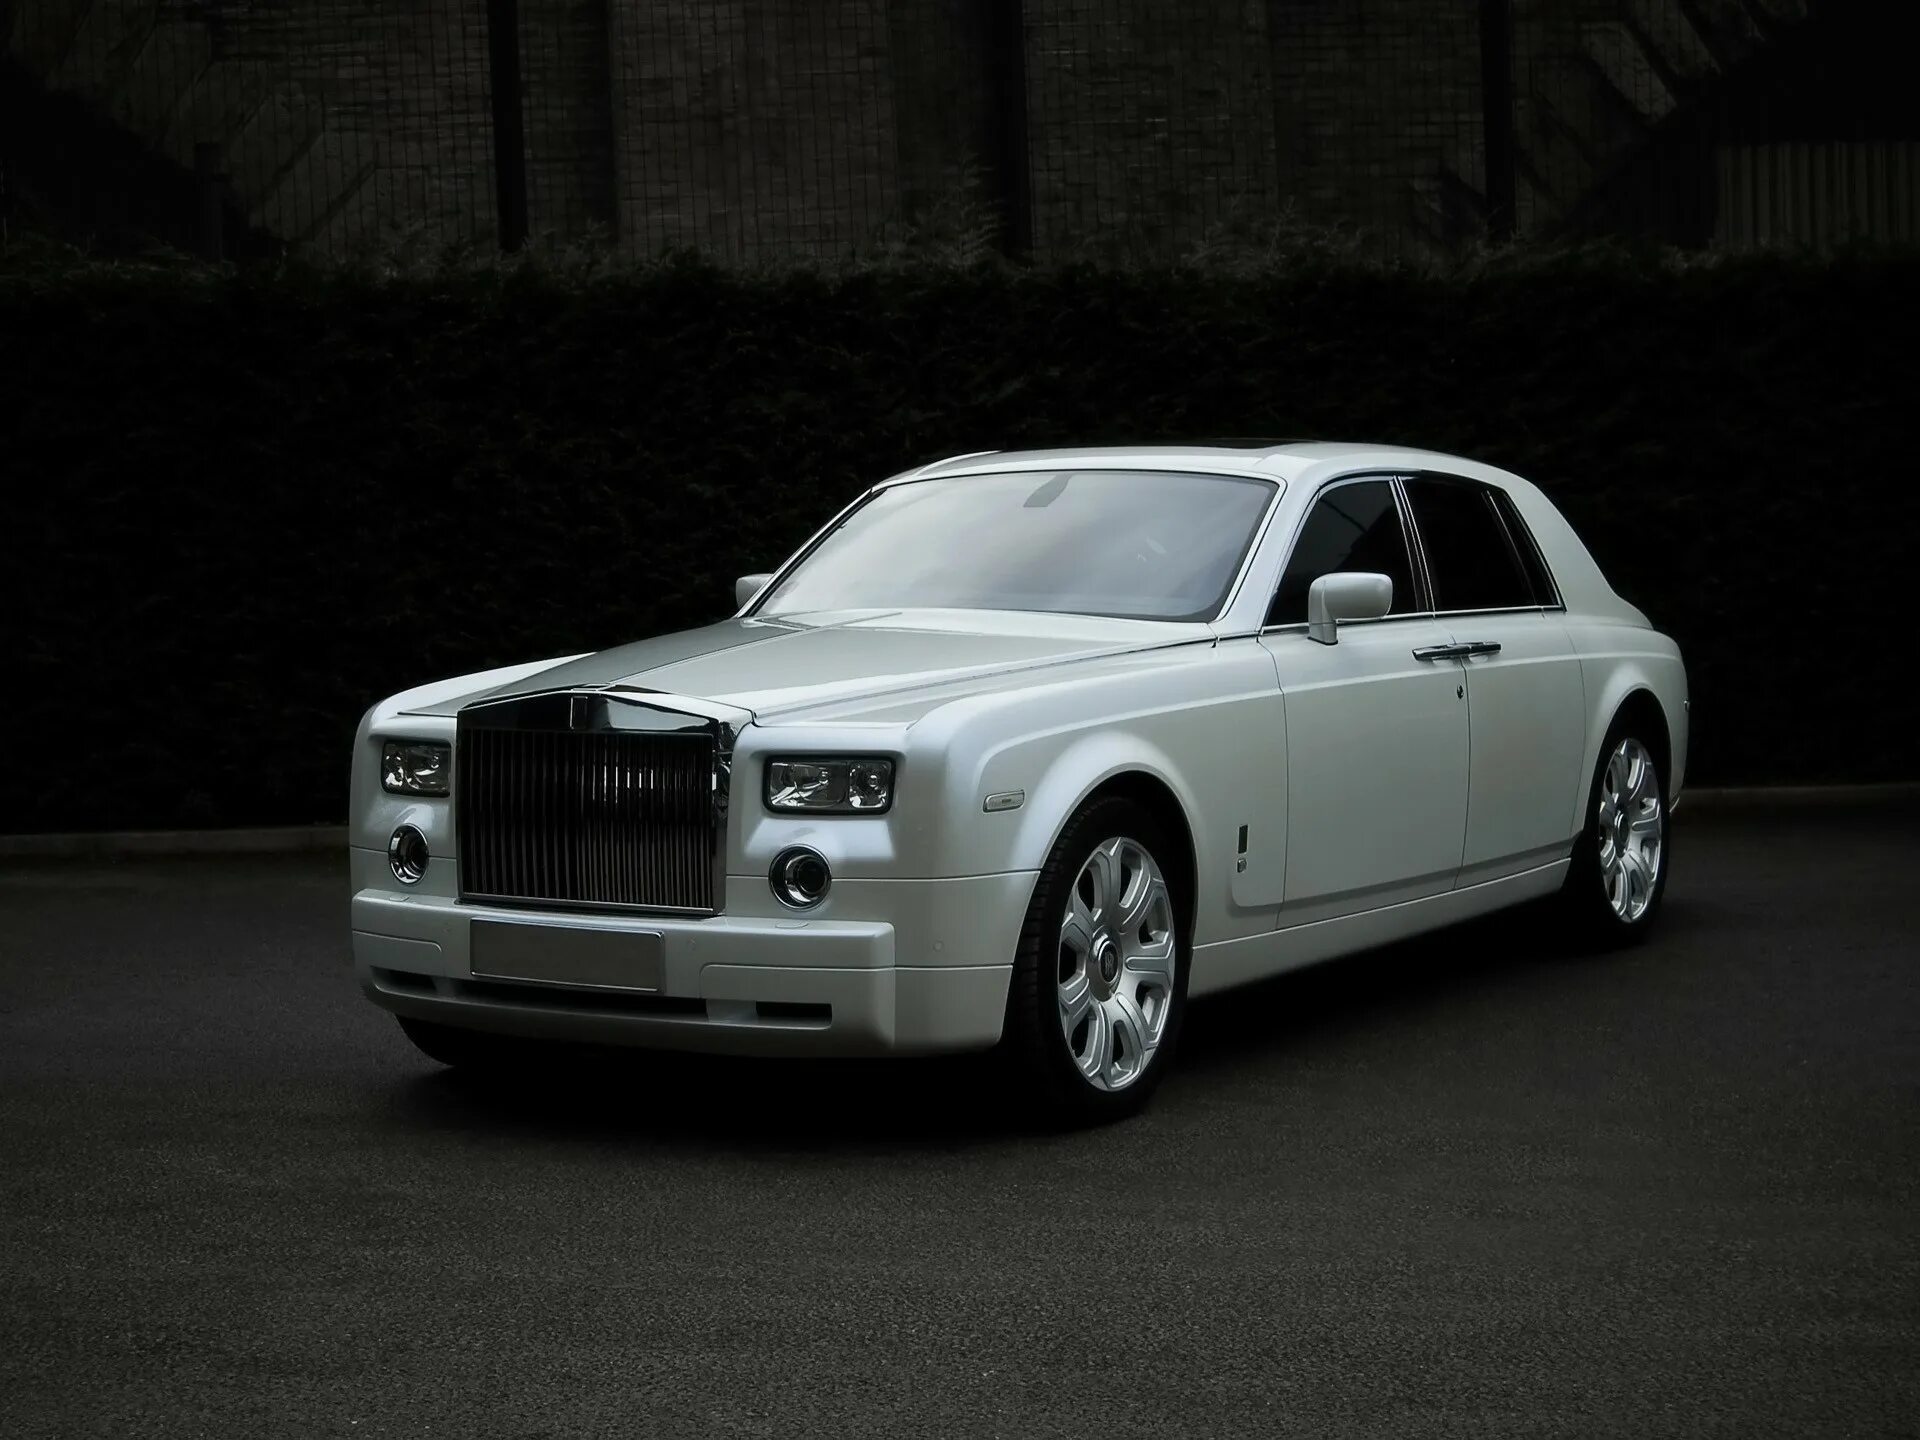 Rolls Royce Phantom 2009. Rolls Royce Phantom белый. Роллс Ройс Фантом 2009 белый. Роллс Ройс Фантом 2009 года.